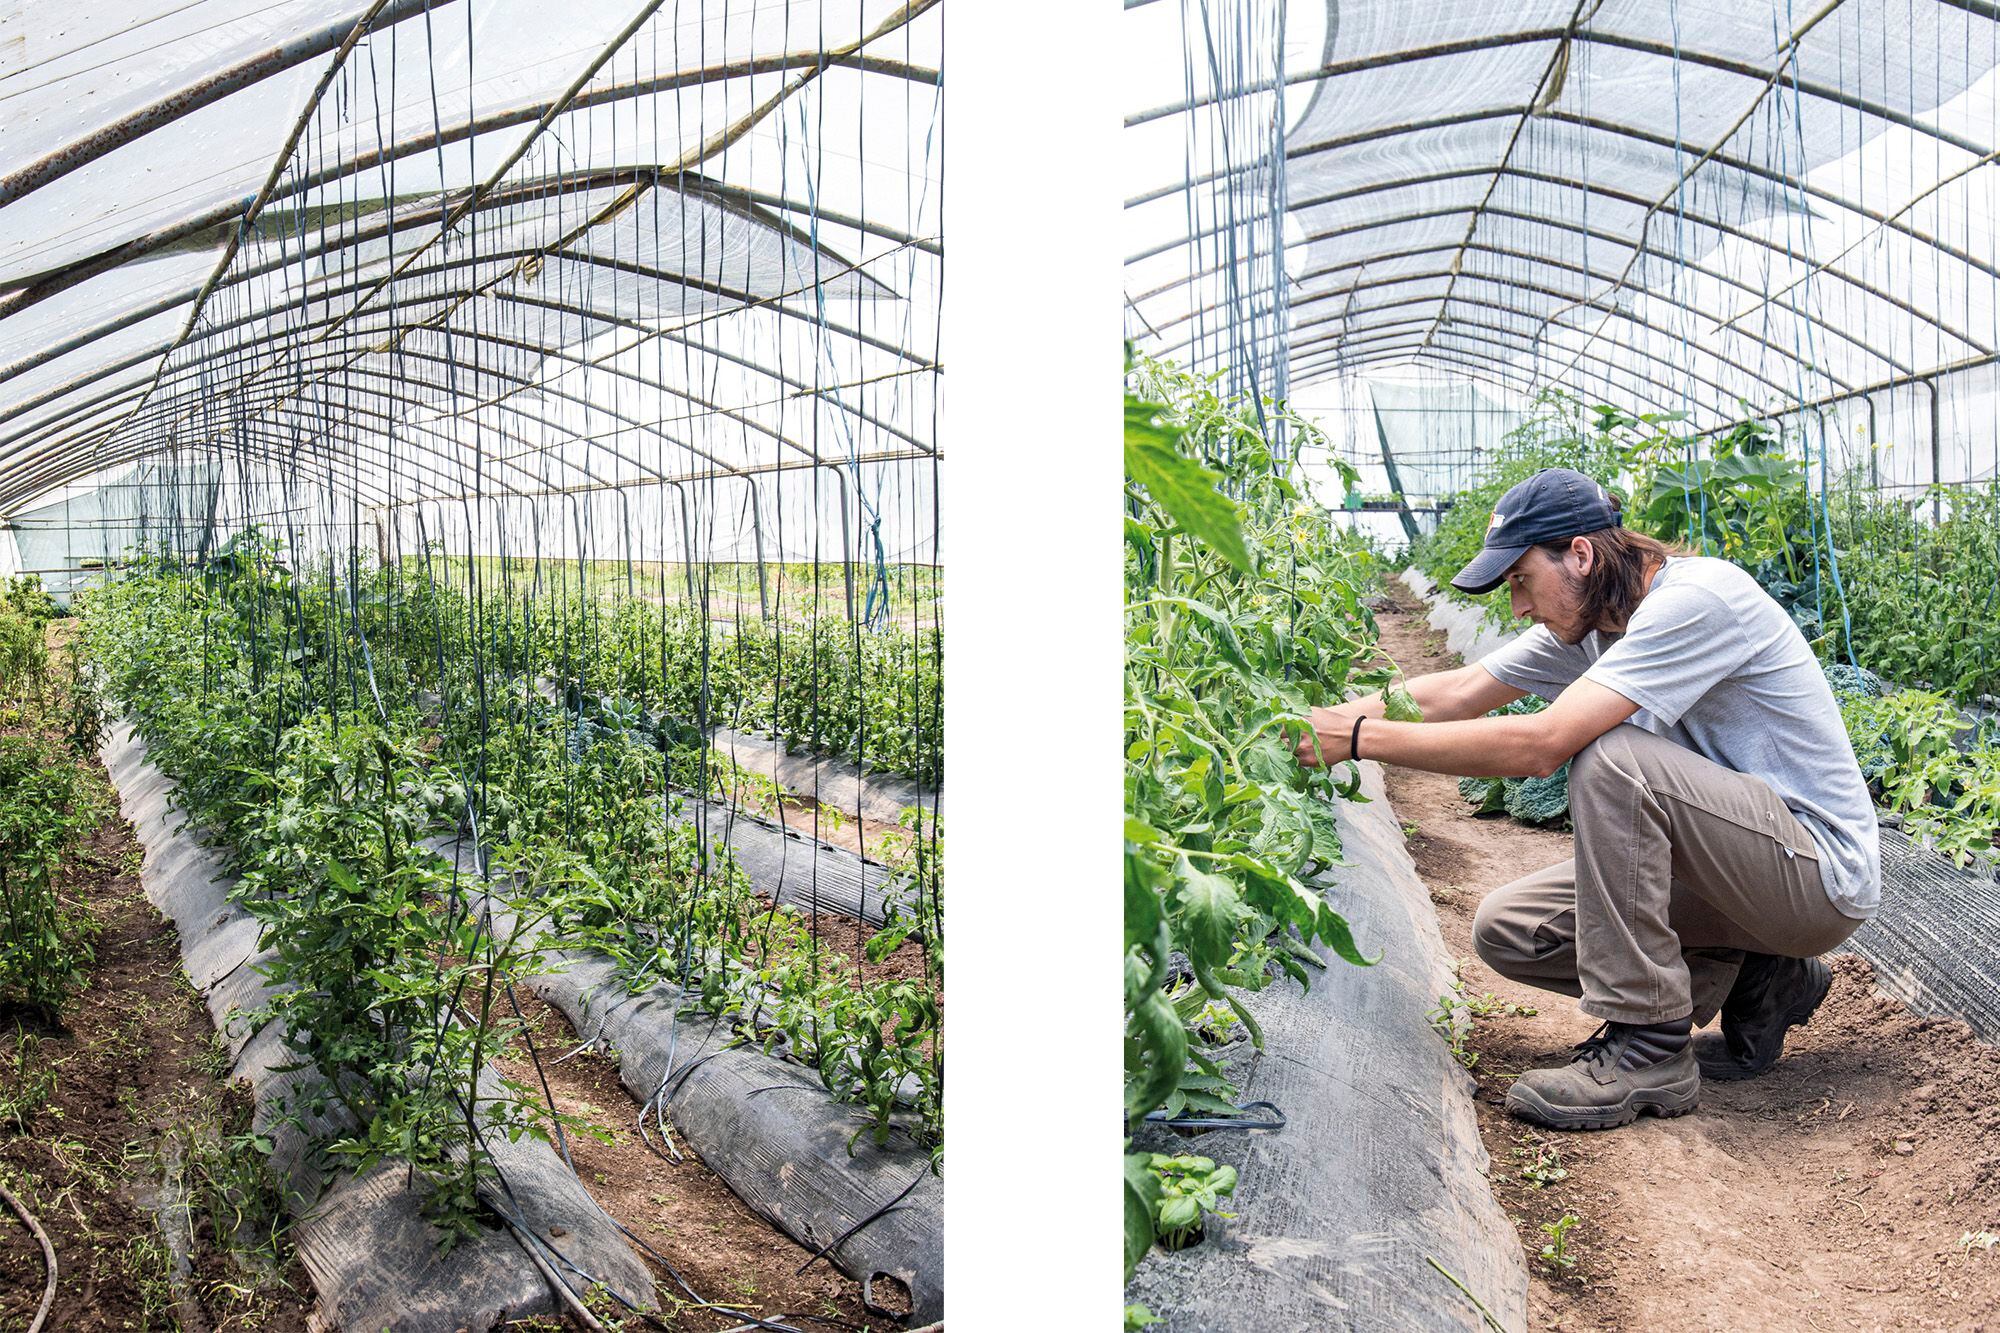 Foto de la izquierda: Las distintas variedades de tomates crecen alineadas y prolijas. Foto de la derecha: Con paciencia y dedicación es cómo se cultiva, respetando los tiempos de la naturaleza.